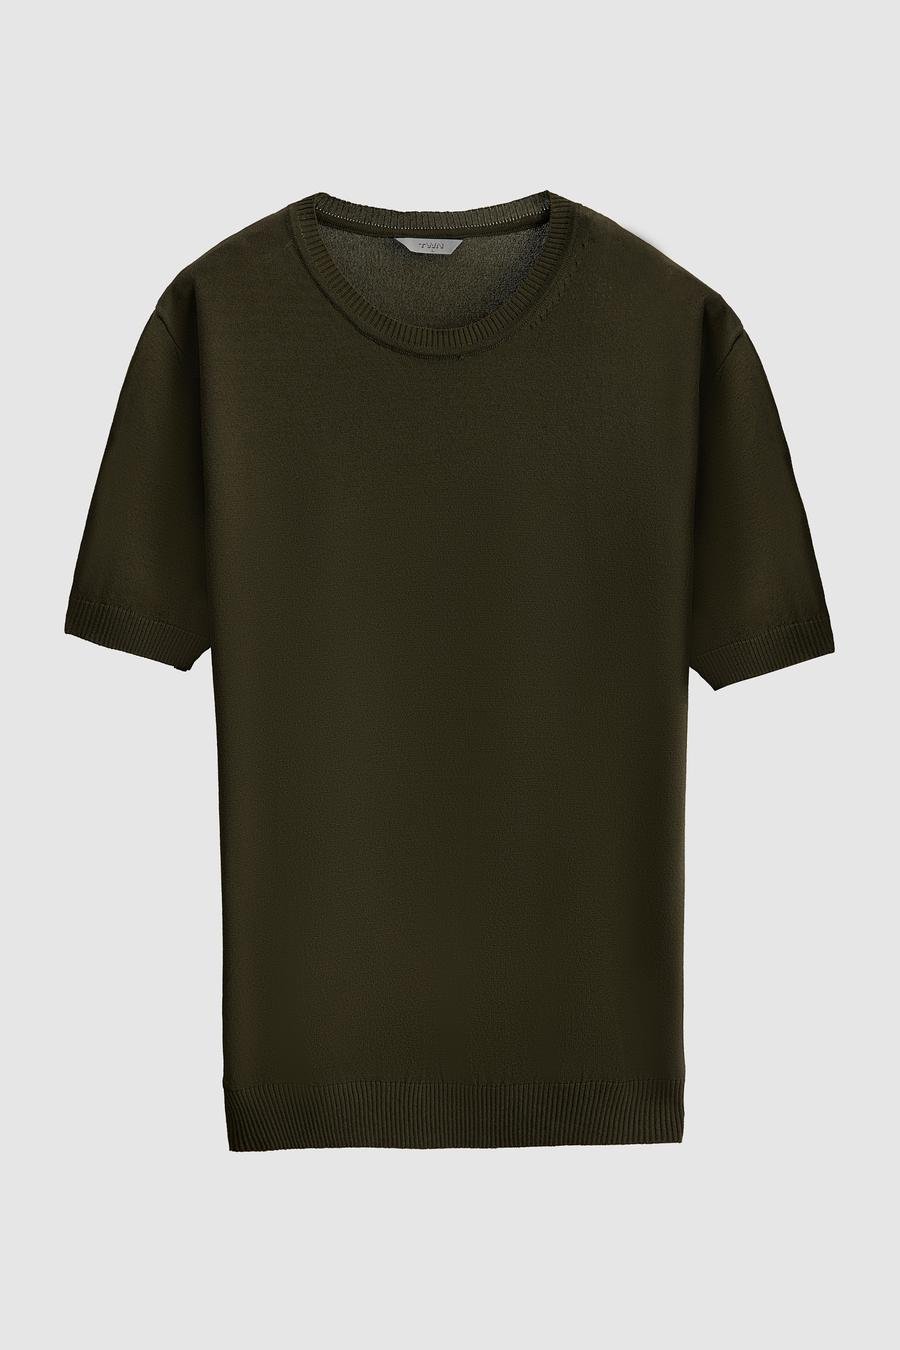 Twn Slim Fit Haki Düz Örgü Rayon Örme T-Shirt - 8683219375194 | D'S Damat